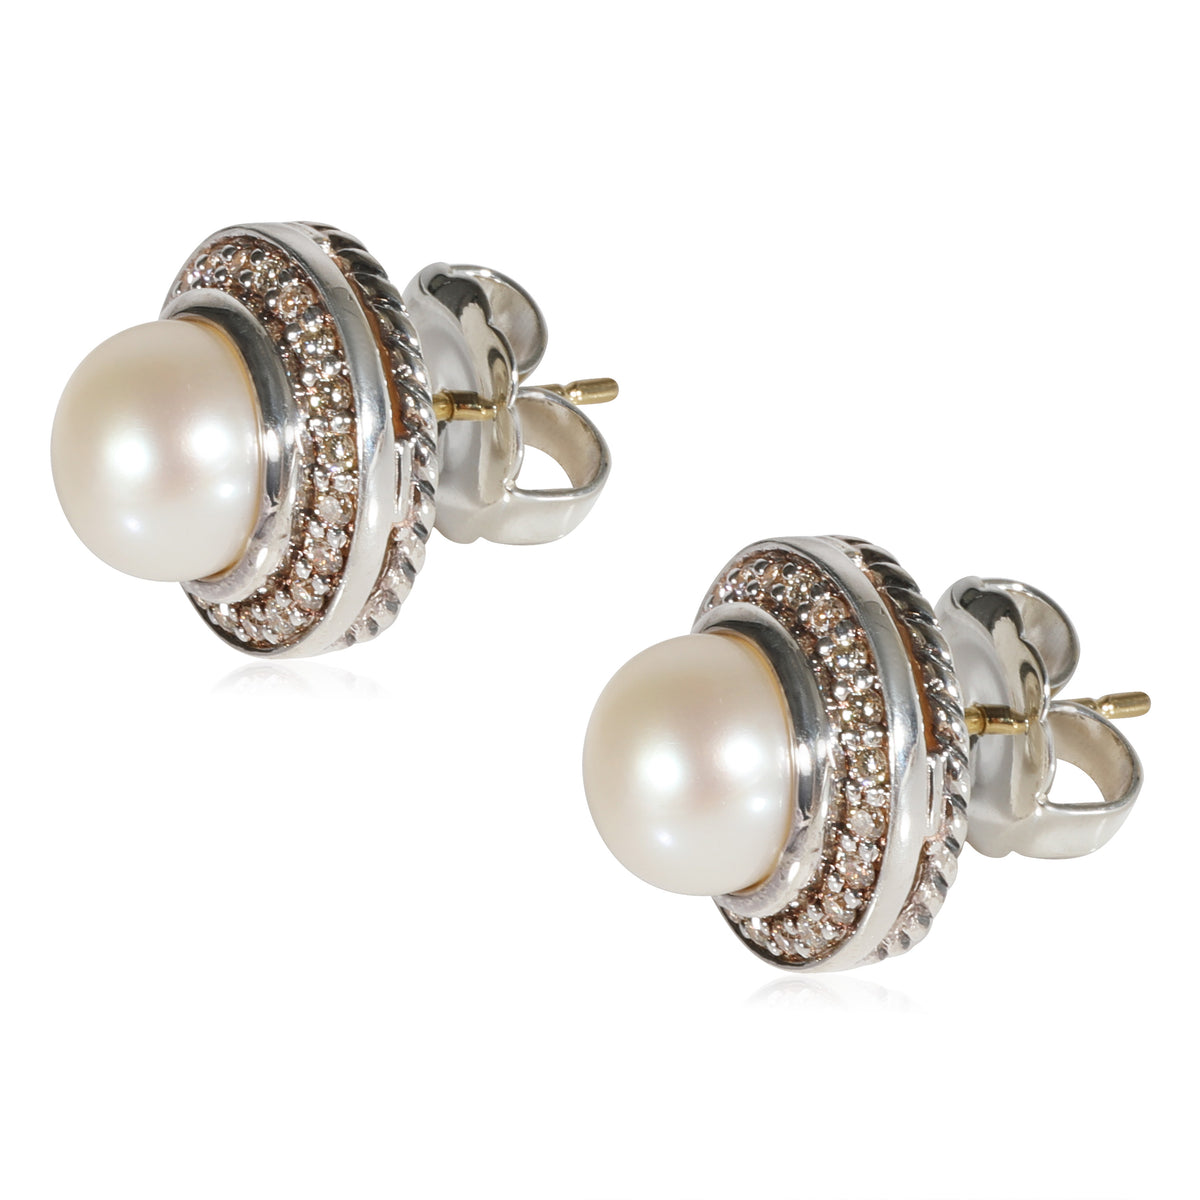 David Yurman Cerise Pearl Diamond Earrings in Sterling Silver 0.29 CTW